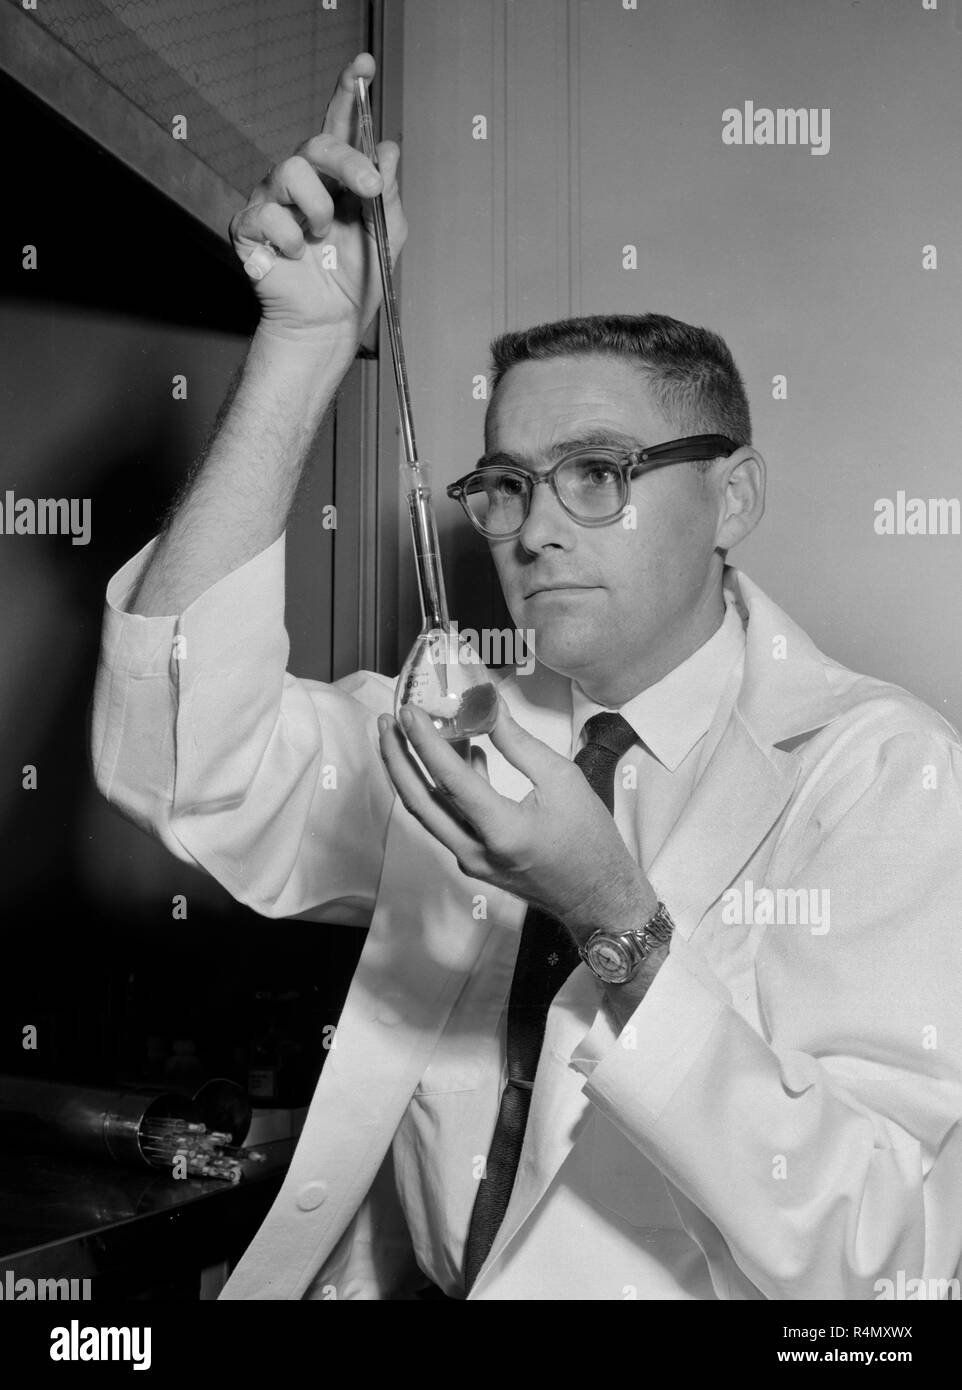 Un technicien travailler à une société américaine du Cancer Research Center à l'UCLA en Californie du Sud, ca. 1959. Banque D'Images